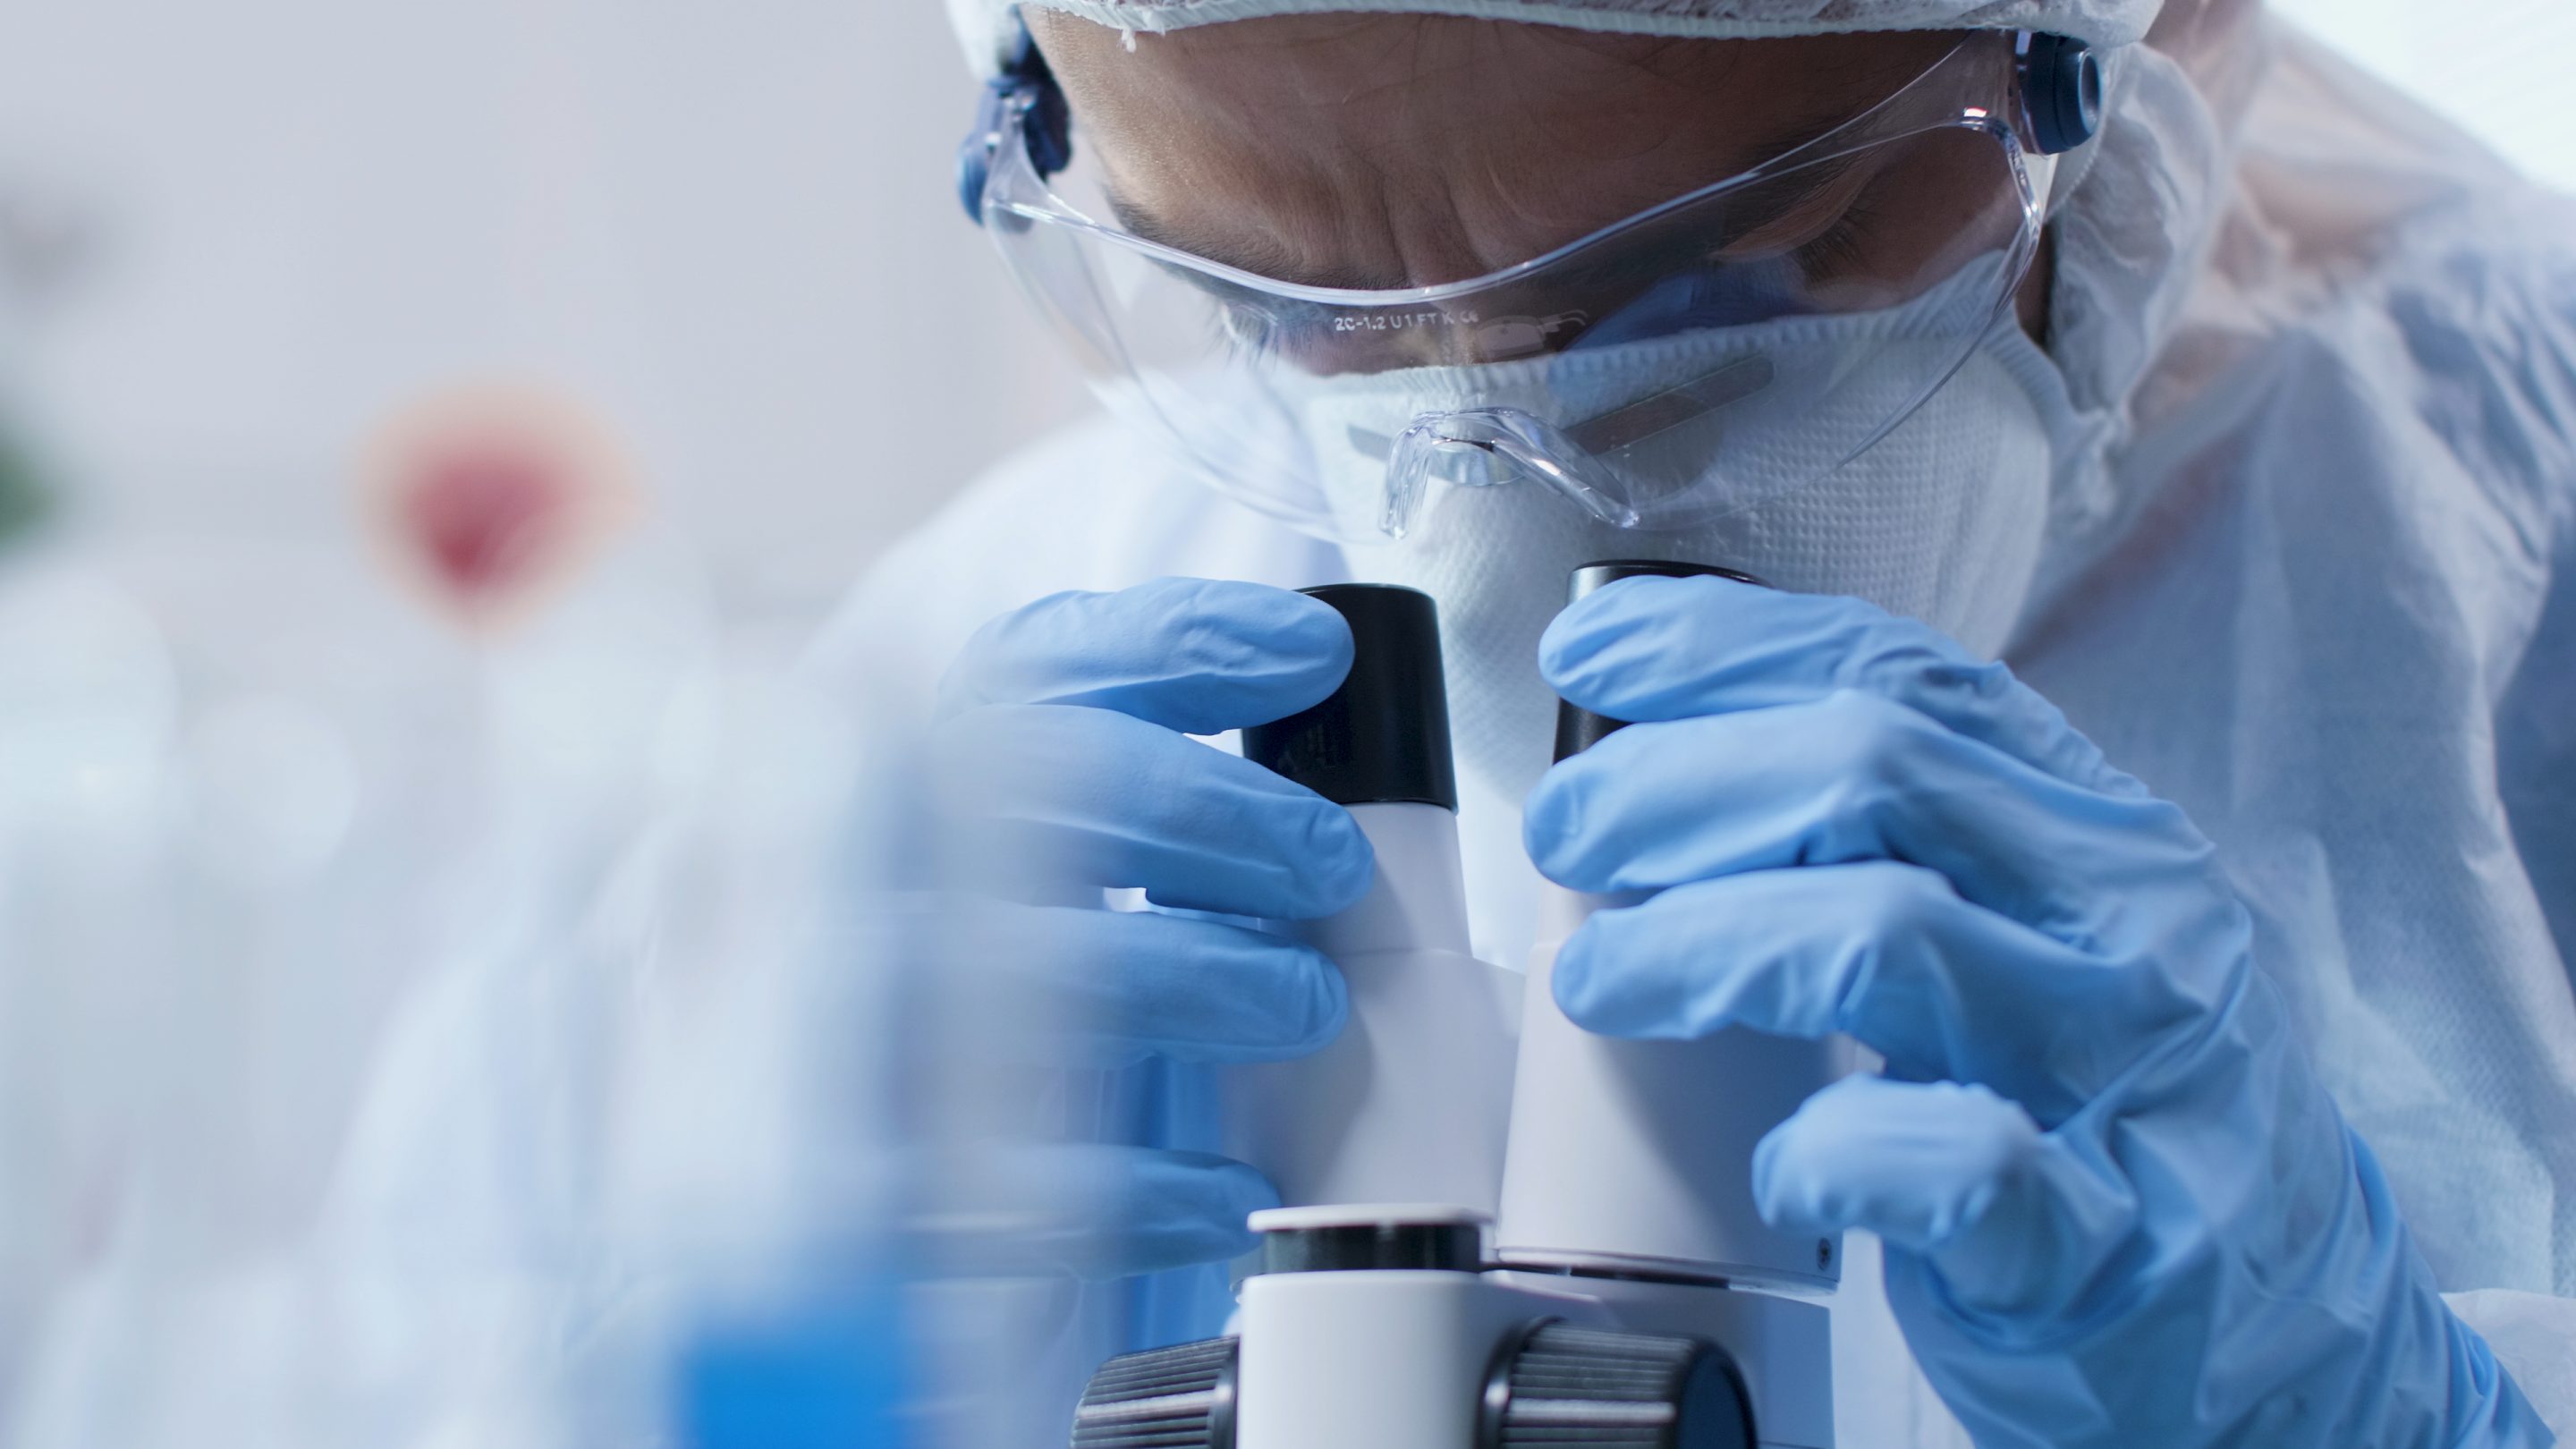 medidas de prevención de riesgos en laboratorios